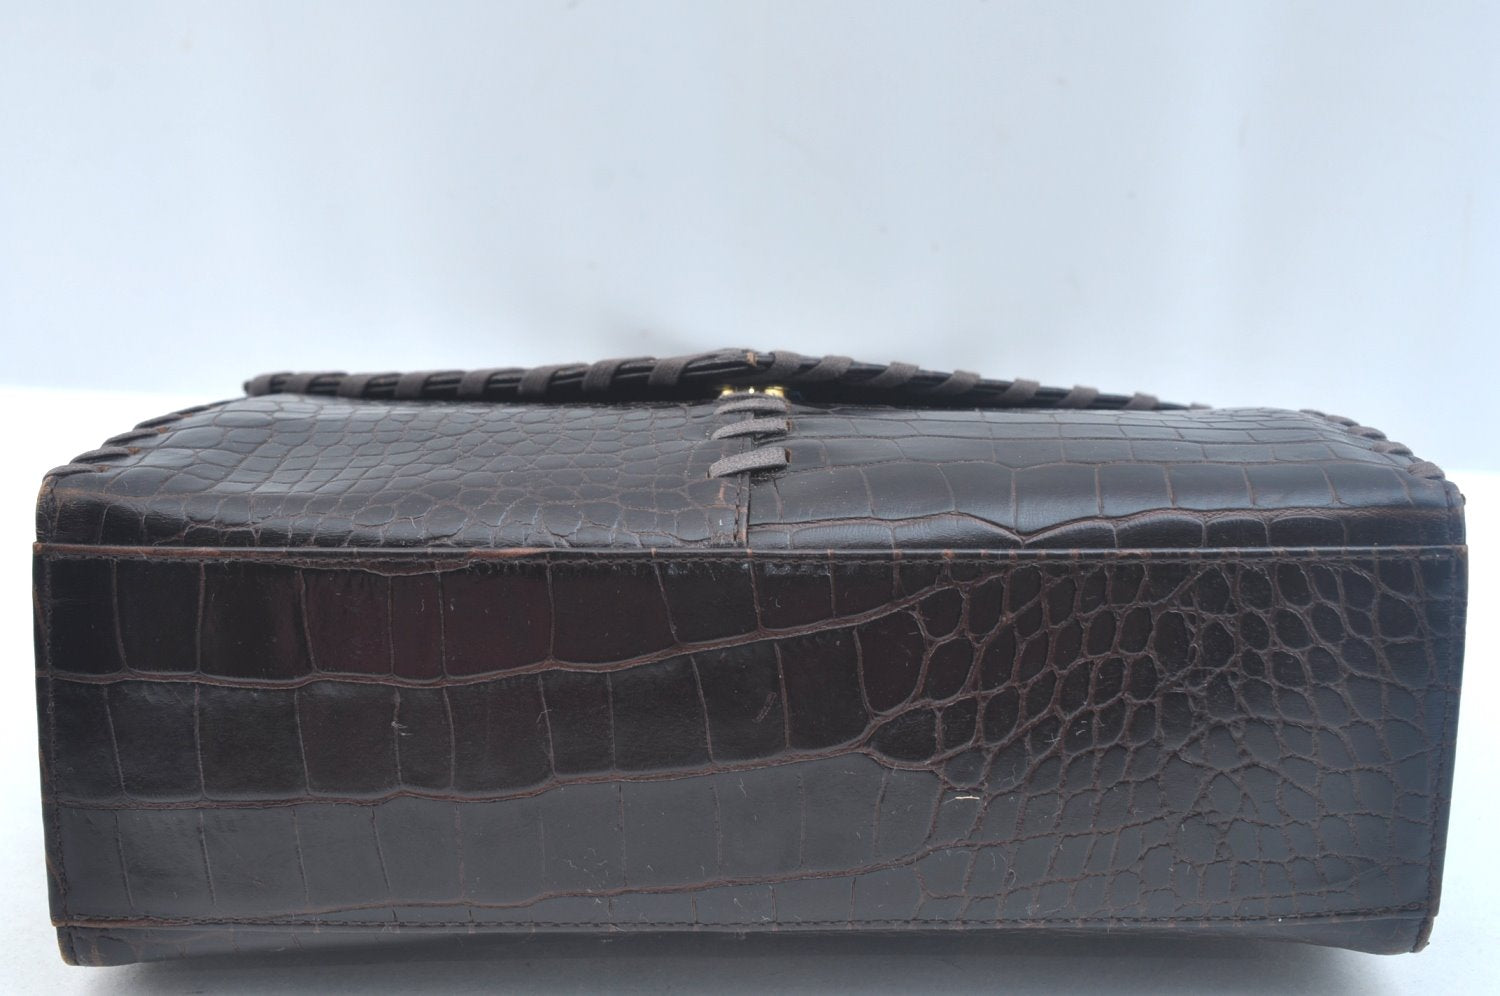 Authentic YVES SAINT LAURENT Vintage Hand Bag Purse Leather Black K9915